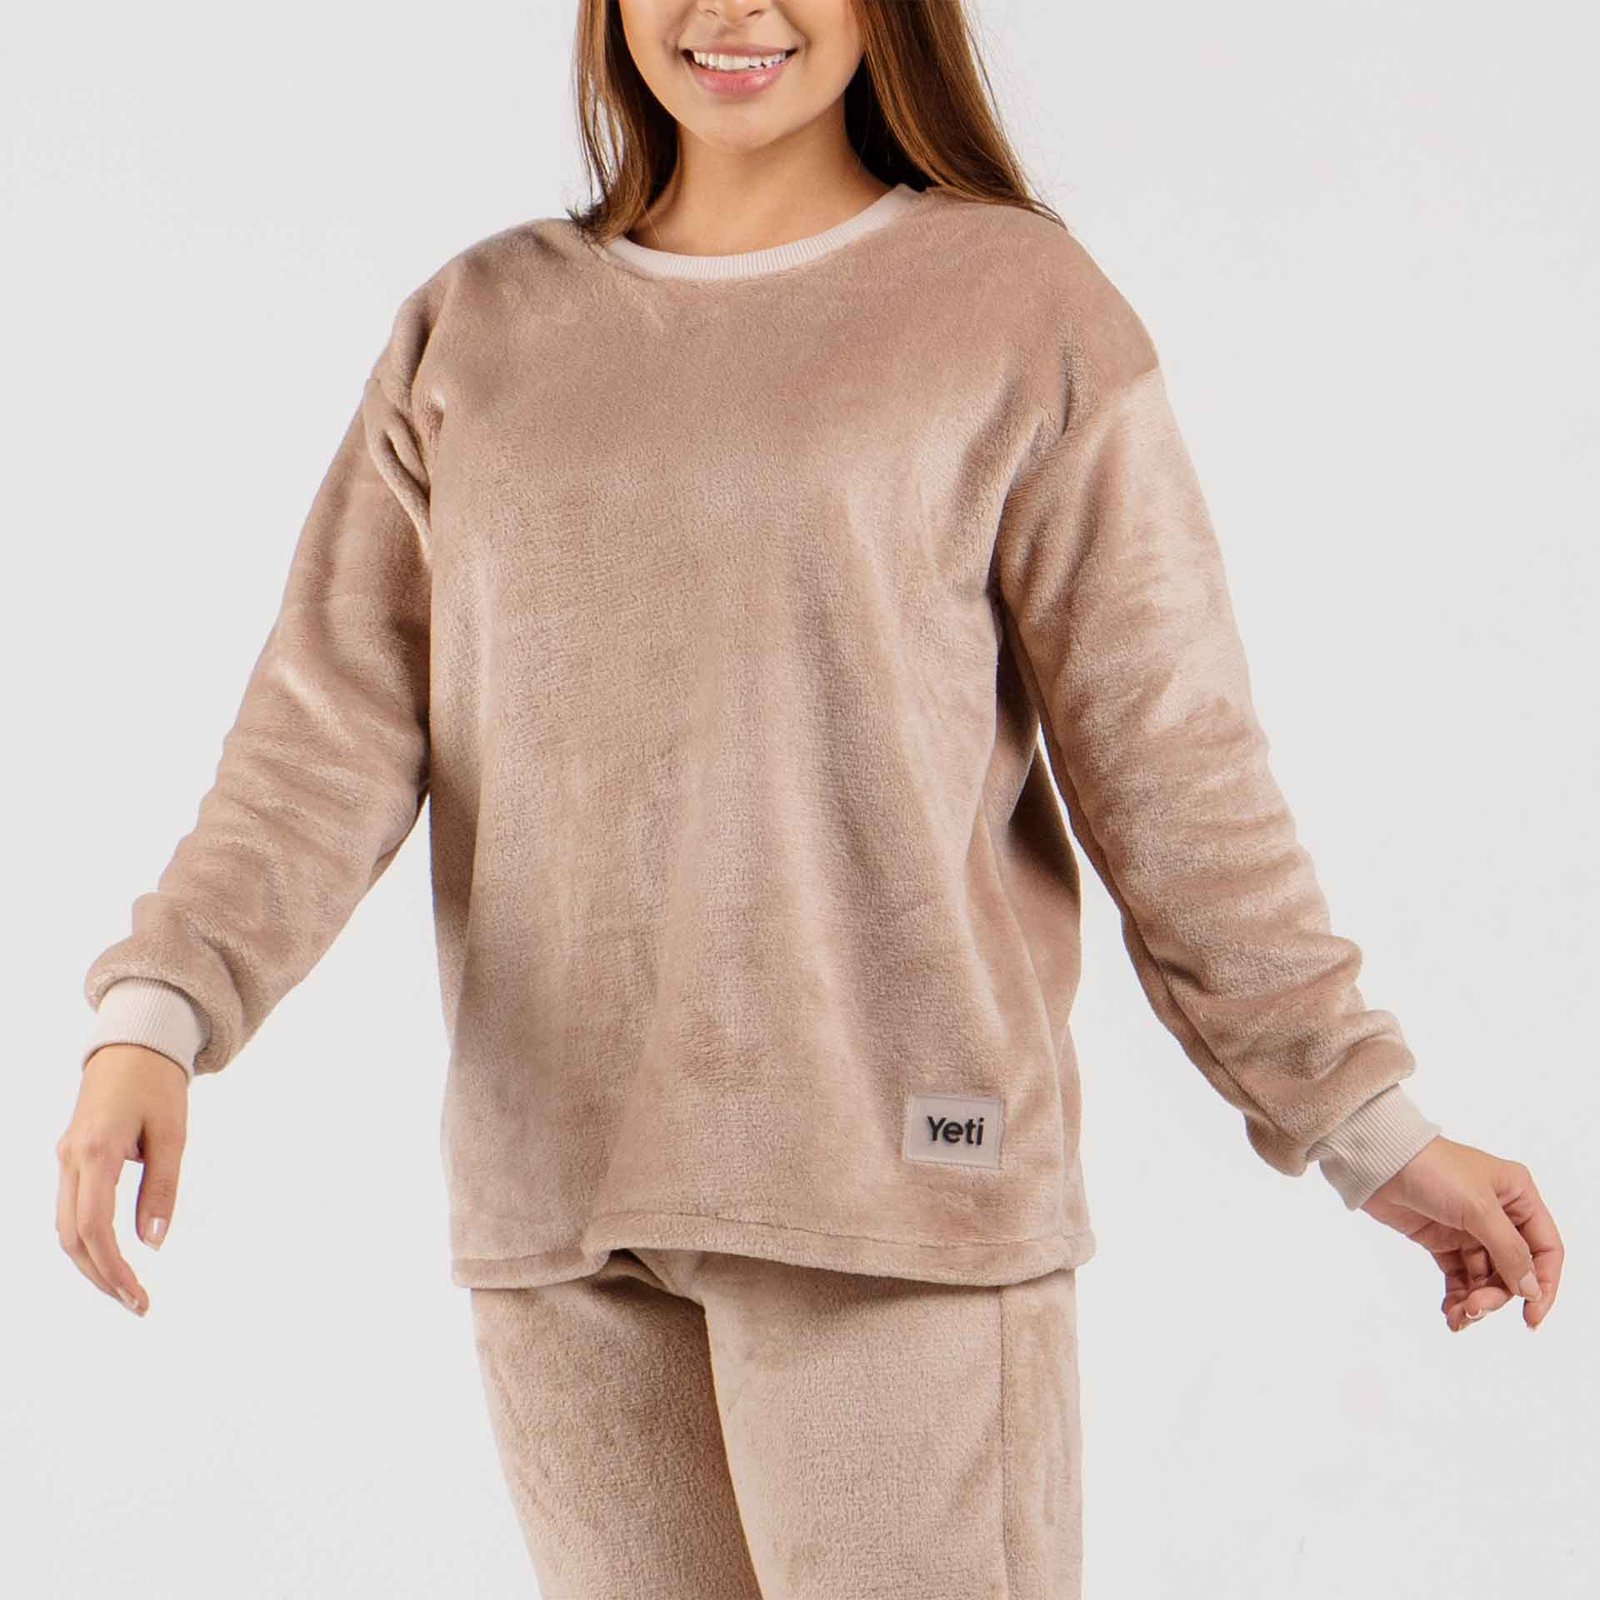 Pijama para mujer - Camibuzo pijama mujer - Yeti